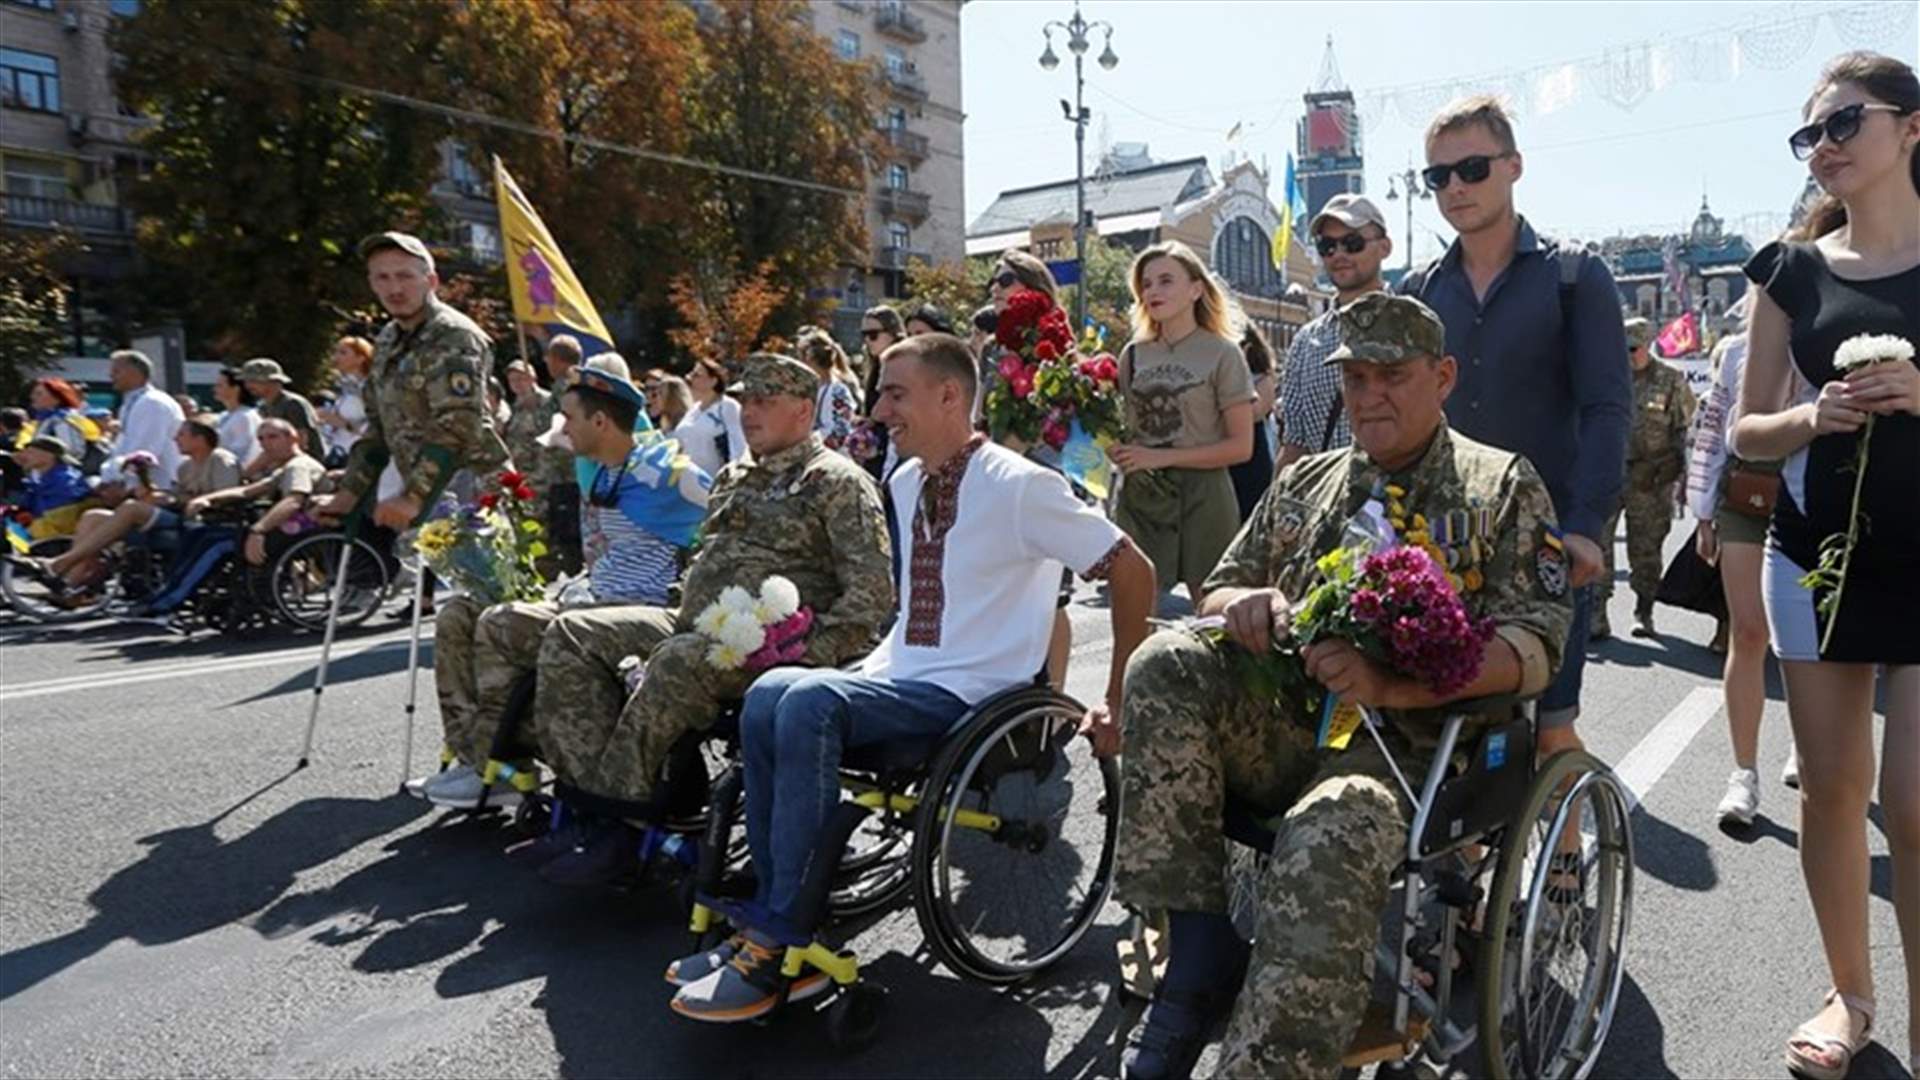 جنود أوكرانيون يحيون يوم الاستقلال بمسيرة غير رسمية بعد إلغاء العرض العسكري (صور)